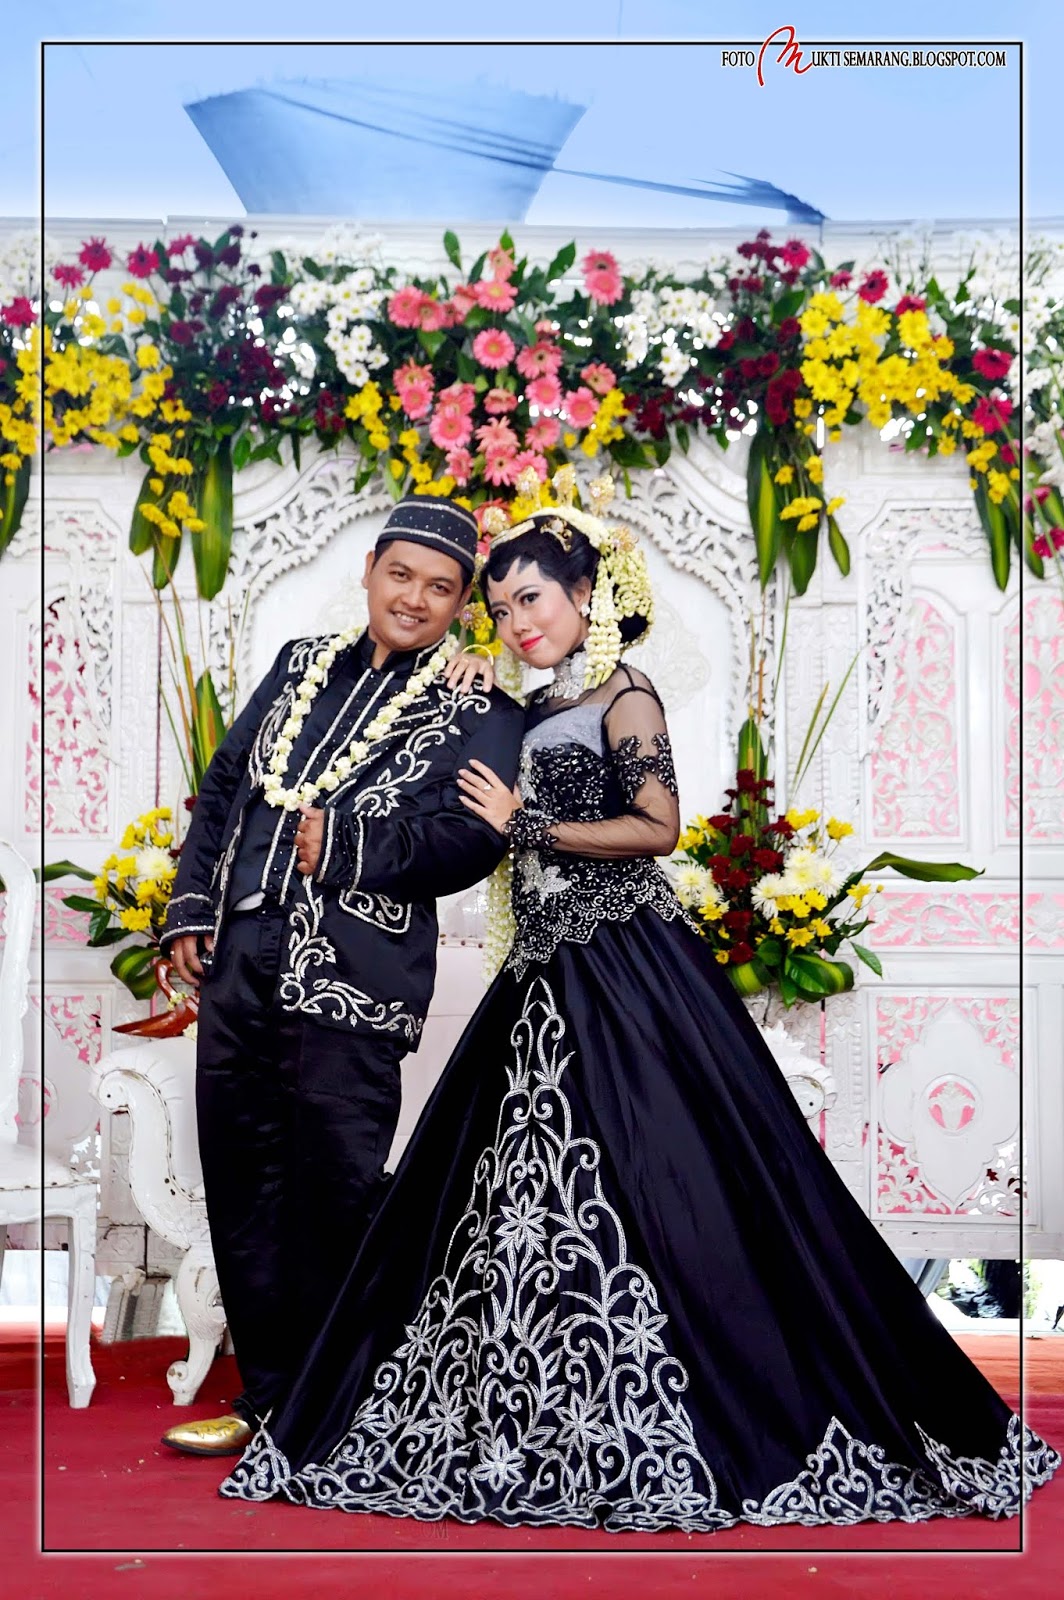 RIAS SEMARANG ARTHARIAS SEMARANG WEDDING Rias Pengantin Semarang